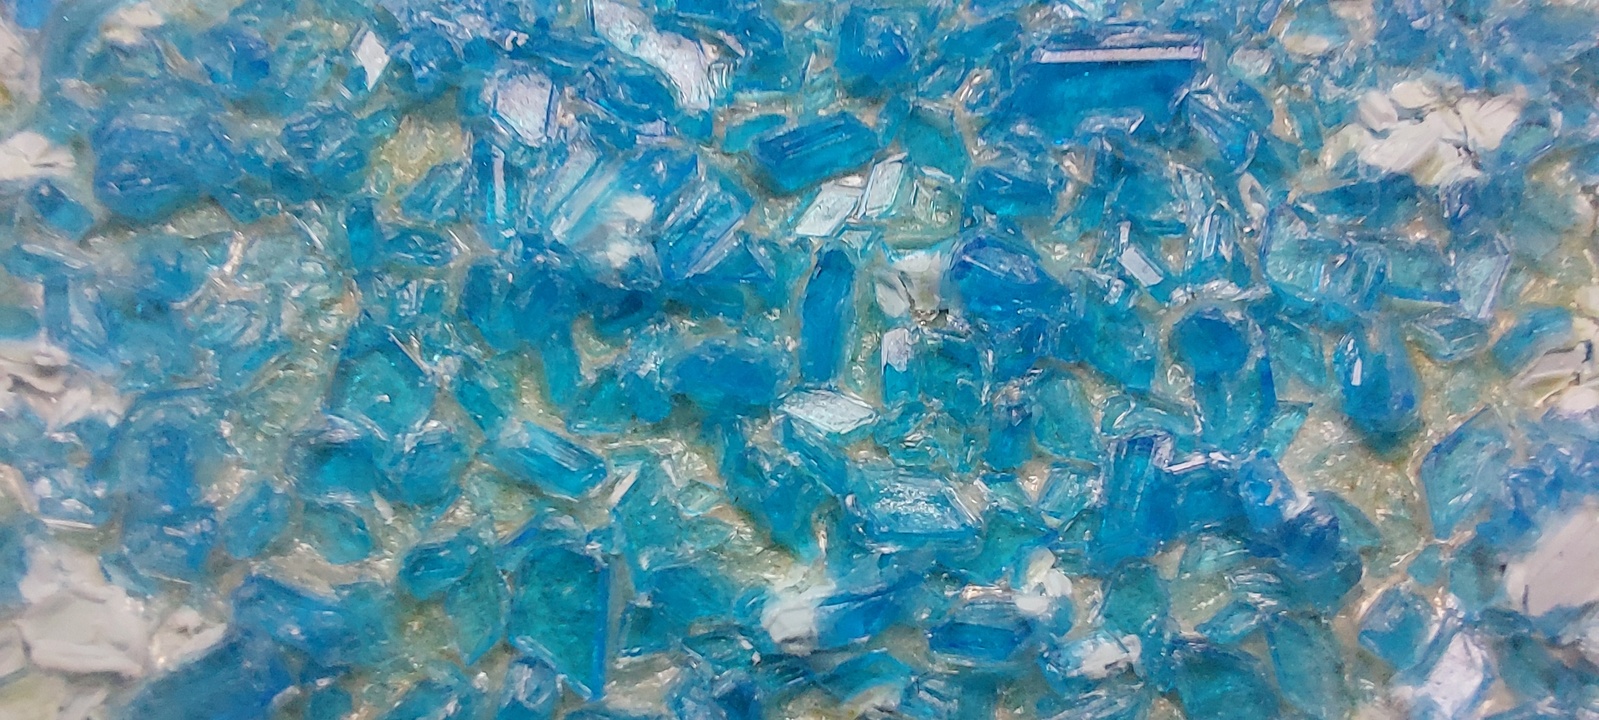 krystalizace modré skalice II.jpg